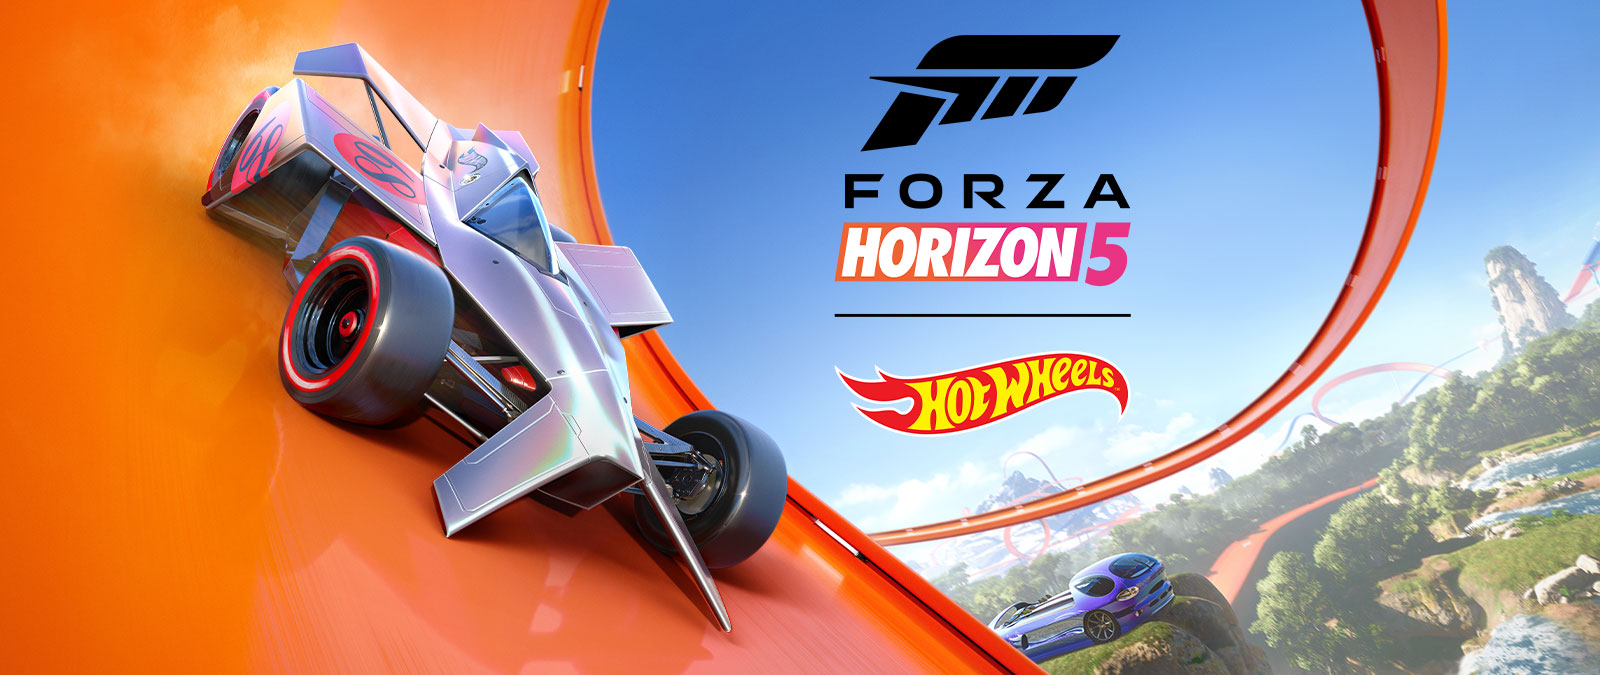 Forza Horizon 5, Hot Wheels, auto kiitää ympäri Hot Wheels -ratasilmukan.